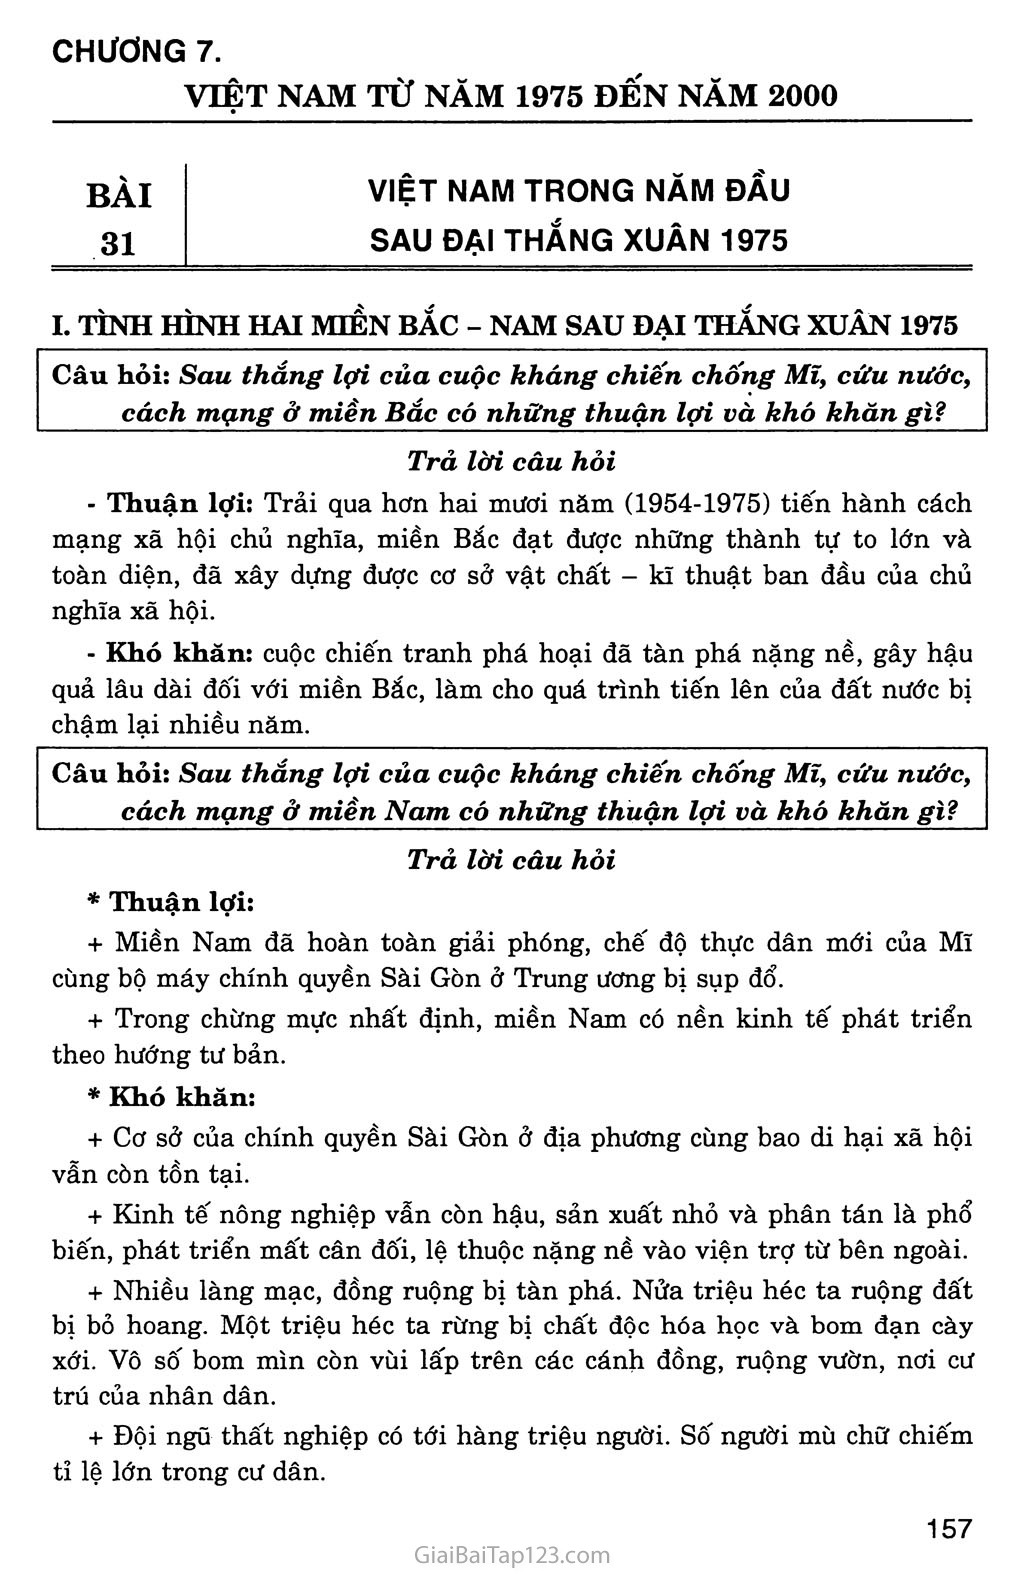 Bài 31: Việt Nam trong năm đầu sau đại thắng Xuân 1975 trang 1